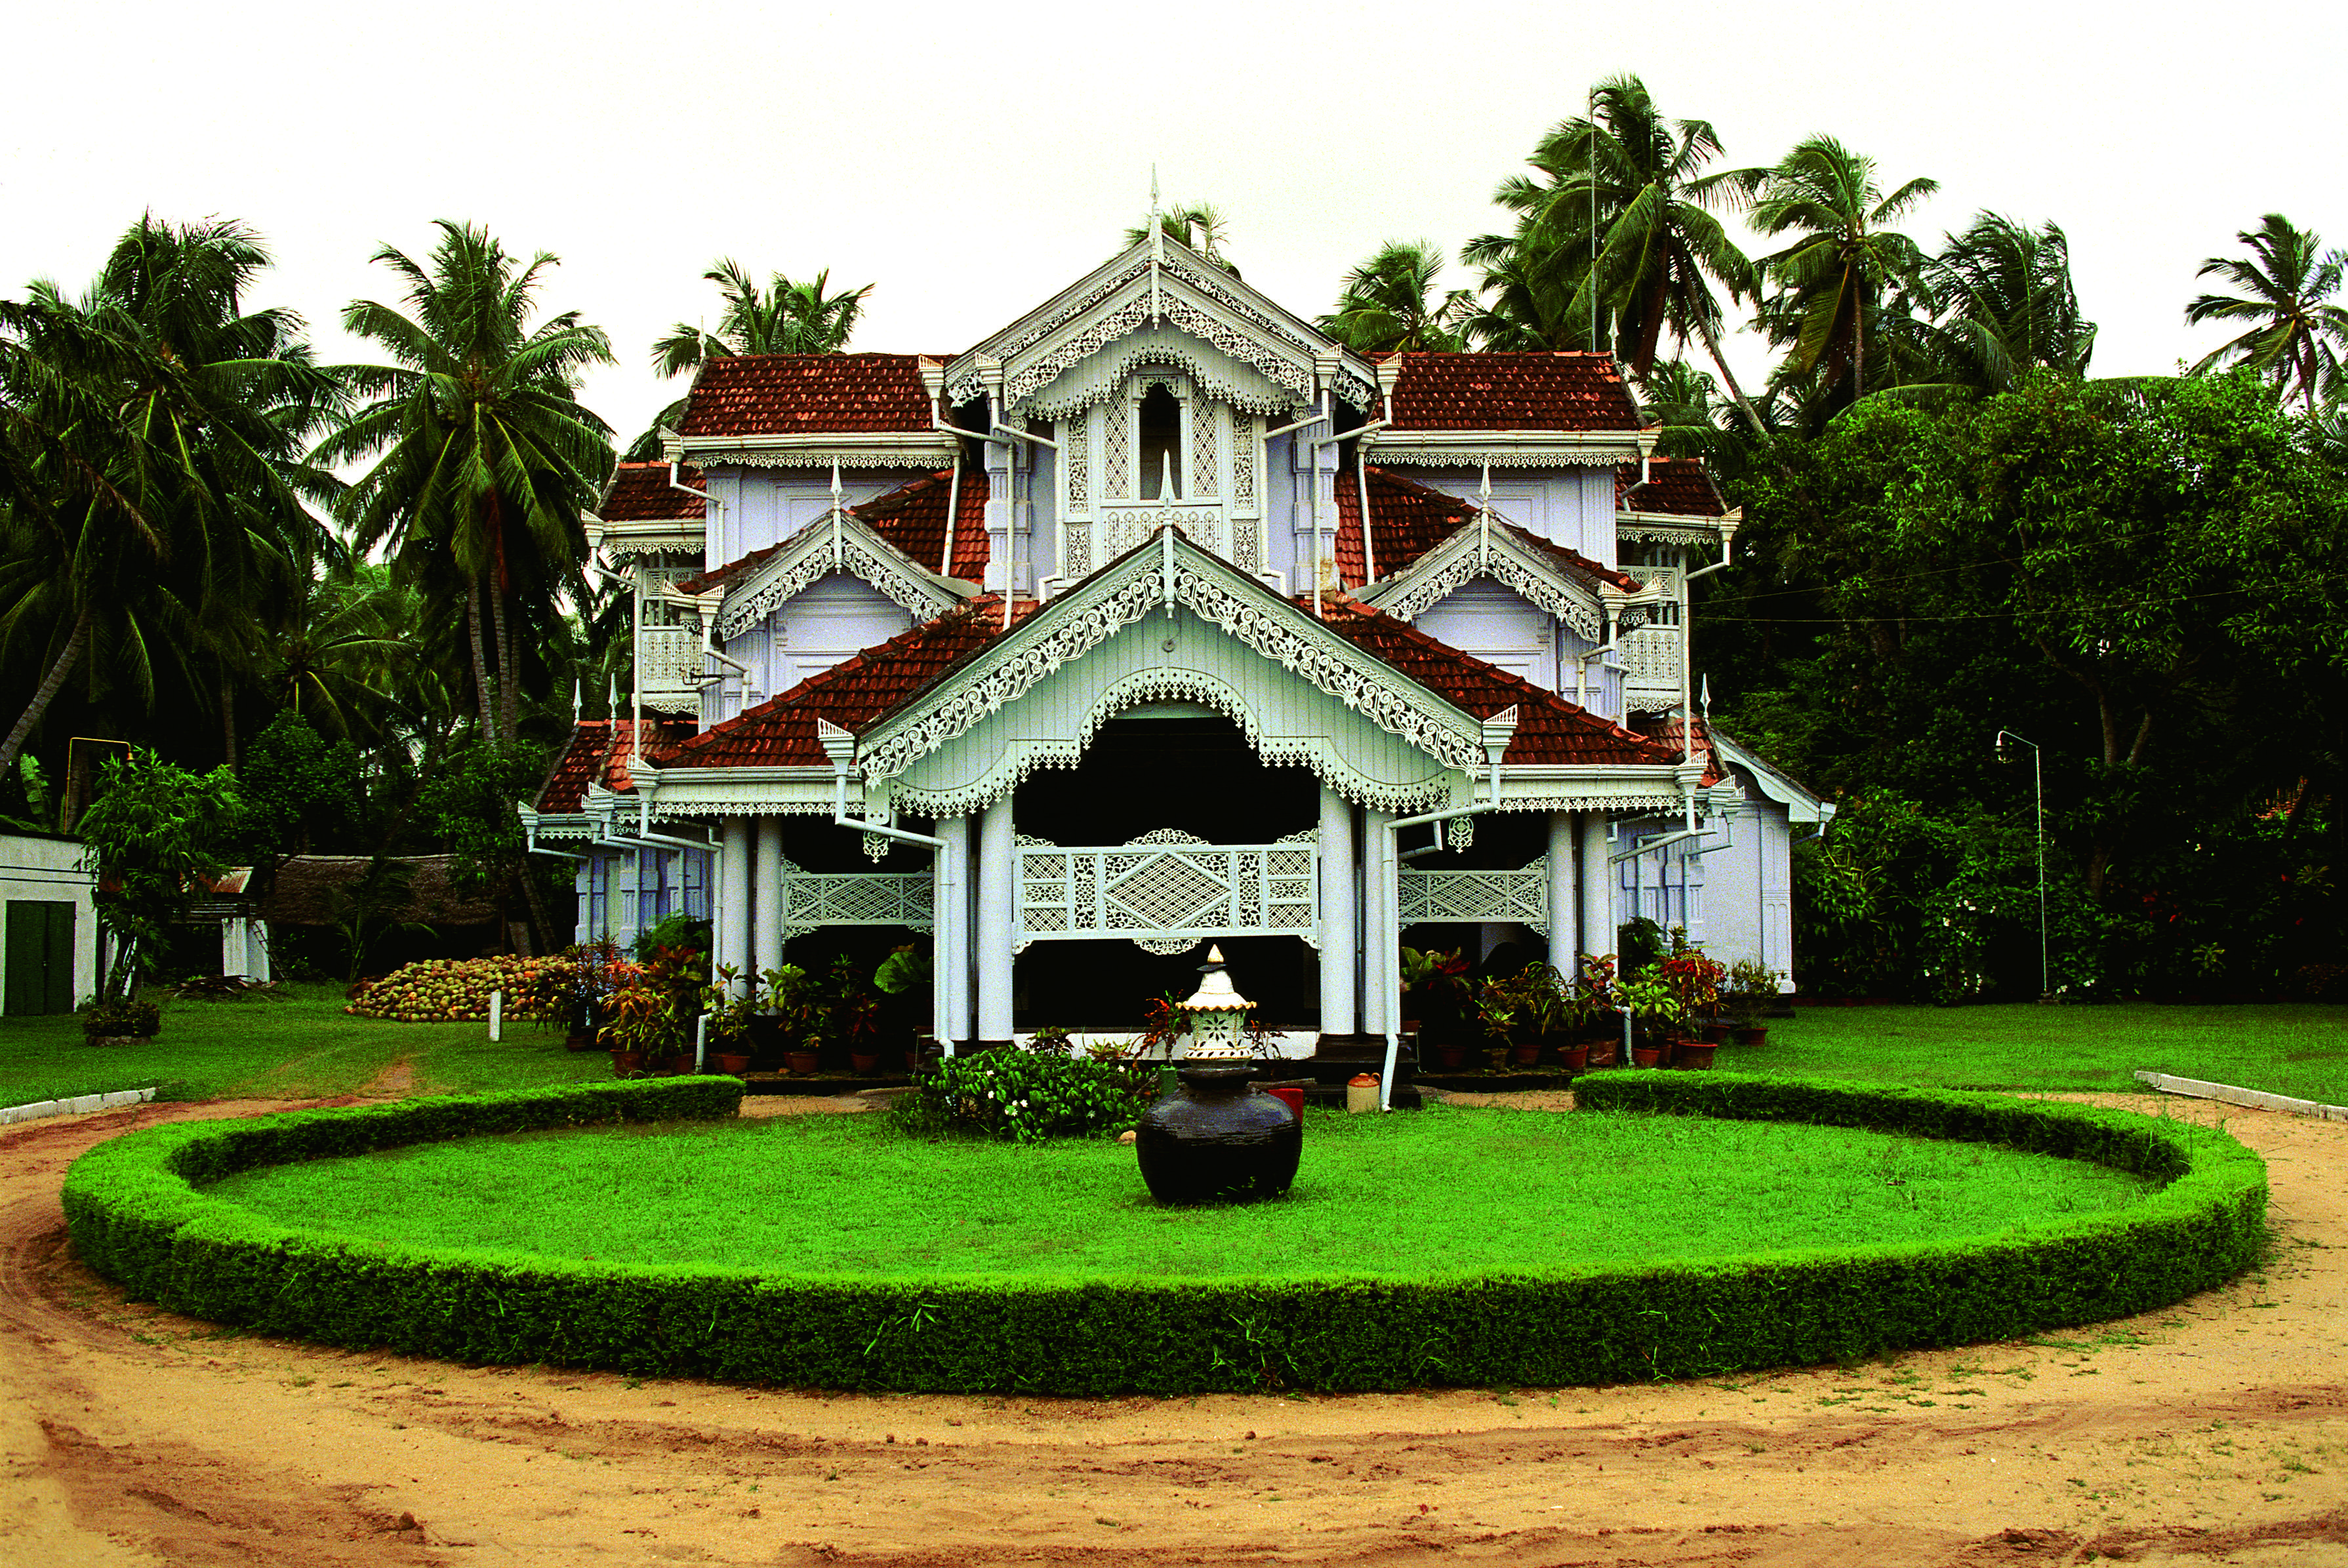 Maison coloniale, Colombo.